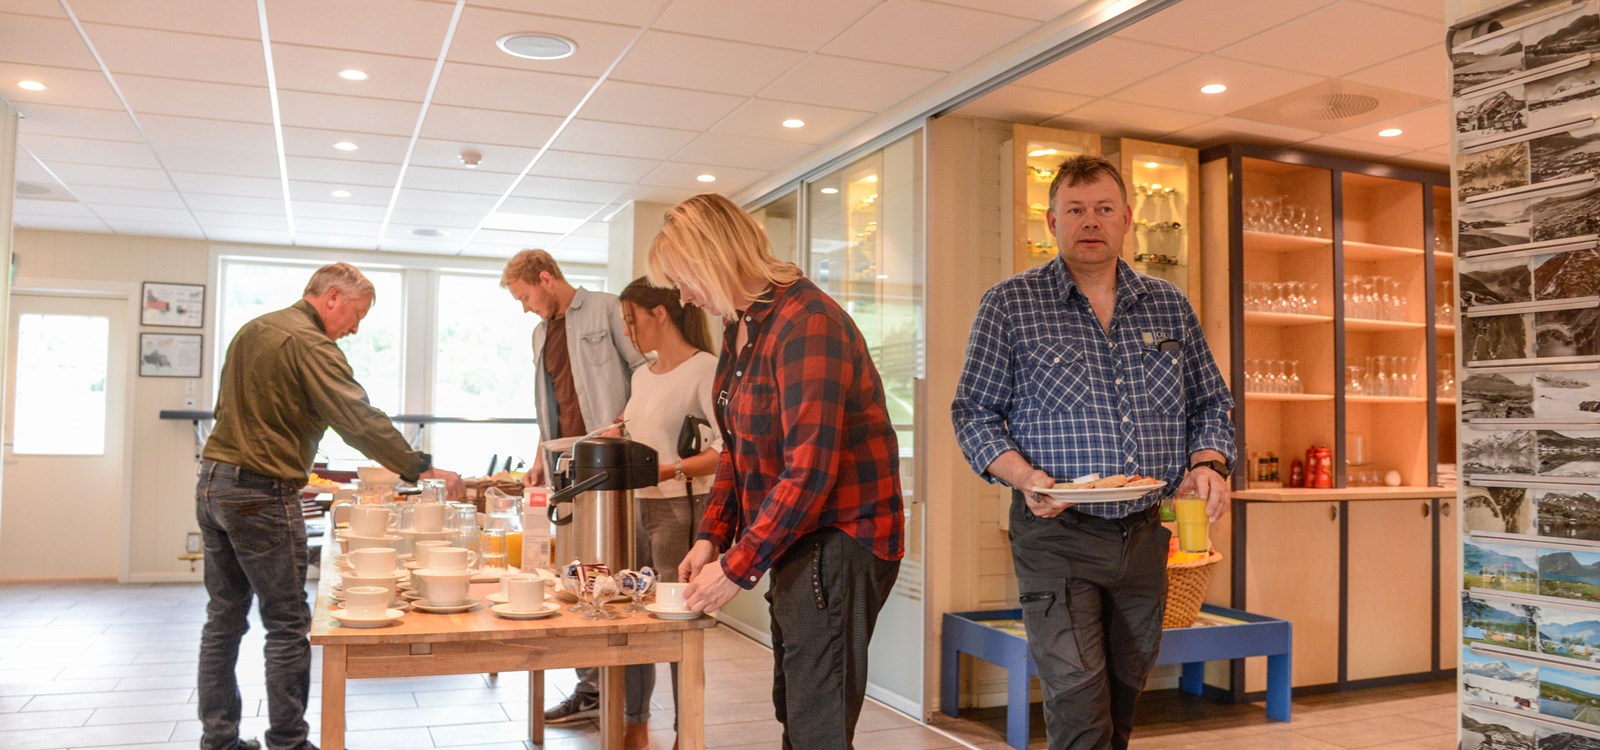 Næringsfrukost i Vang er ein uformell møte- og informasjonsplass for næringsdrivande i Vang.